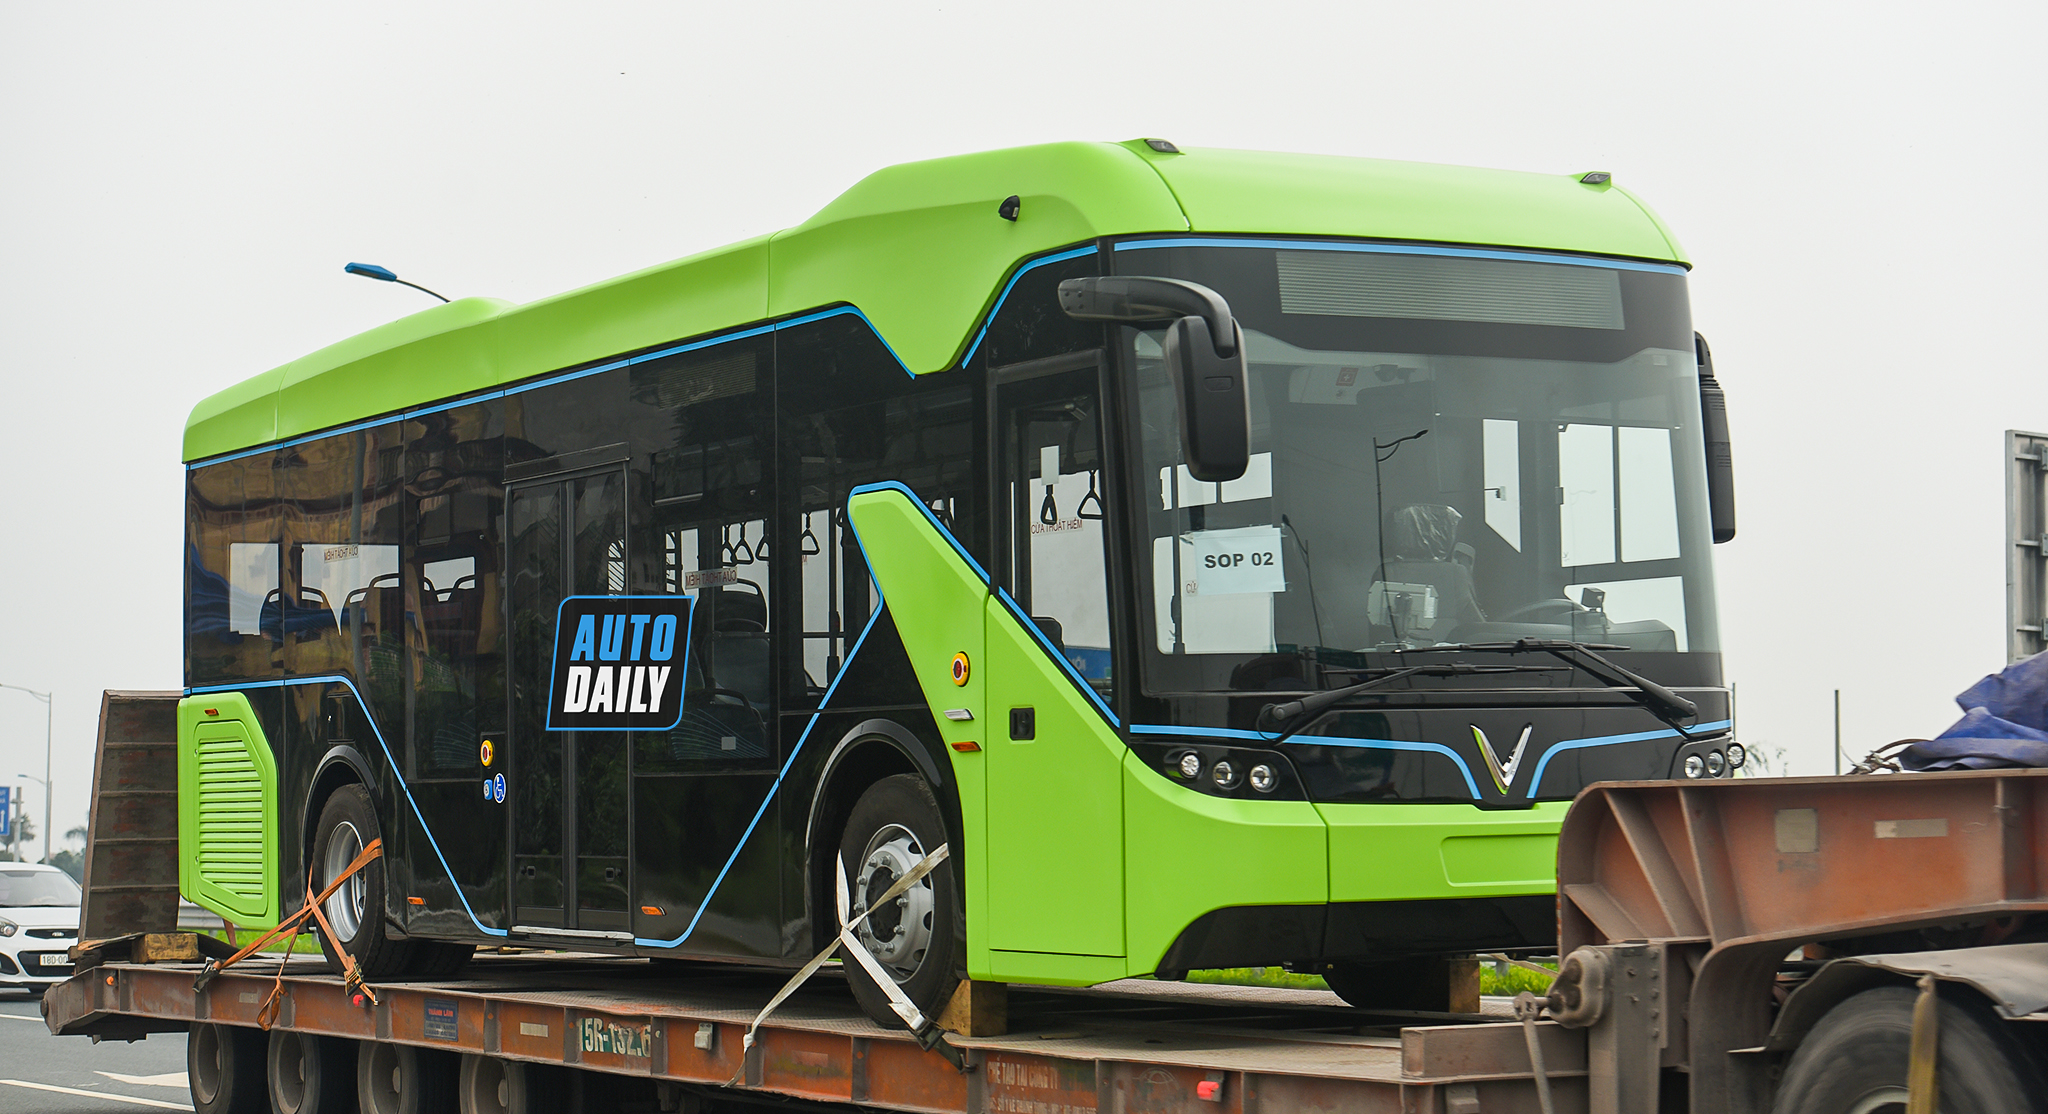 Chùm ảnh loạt xe Bus điện VinFast có mặt tại Hà Nội, sẵn sàng chạy thí điểm dsc-3784-copy.jpg